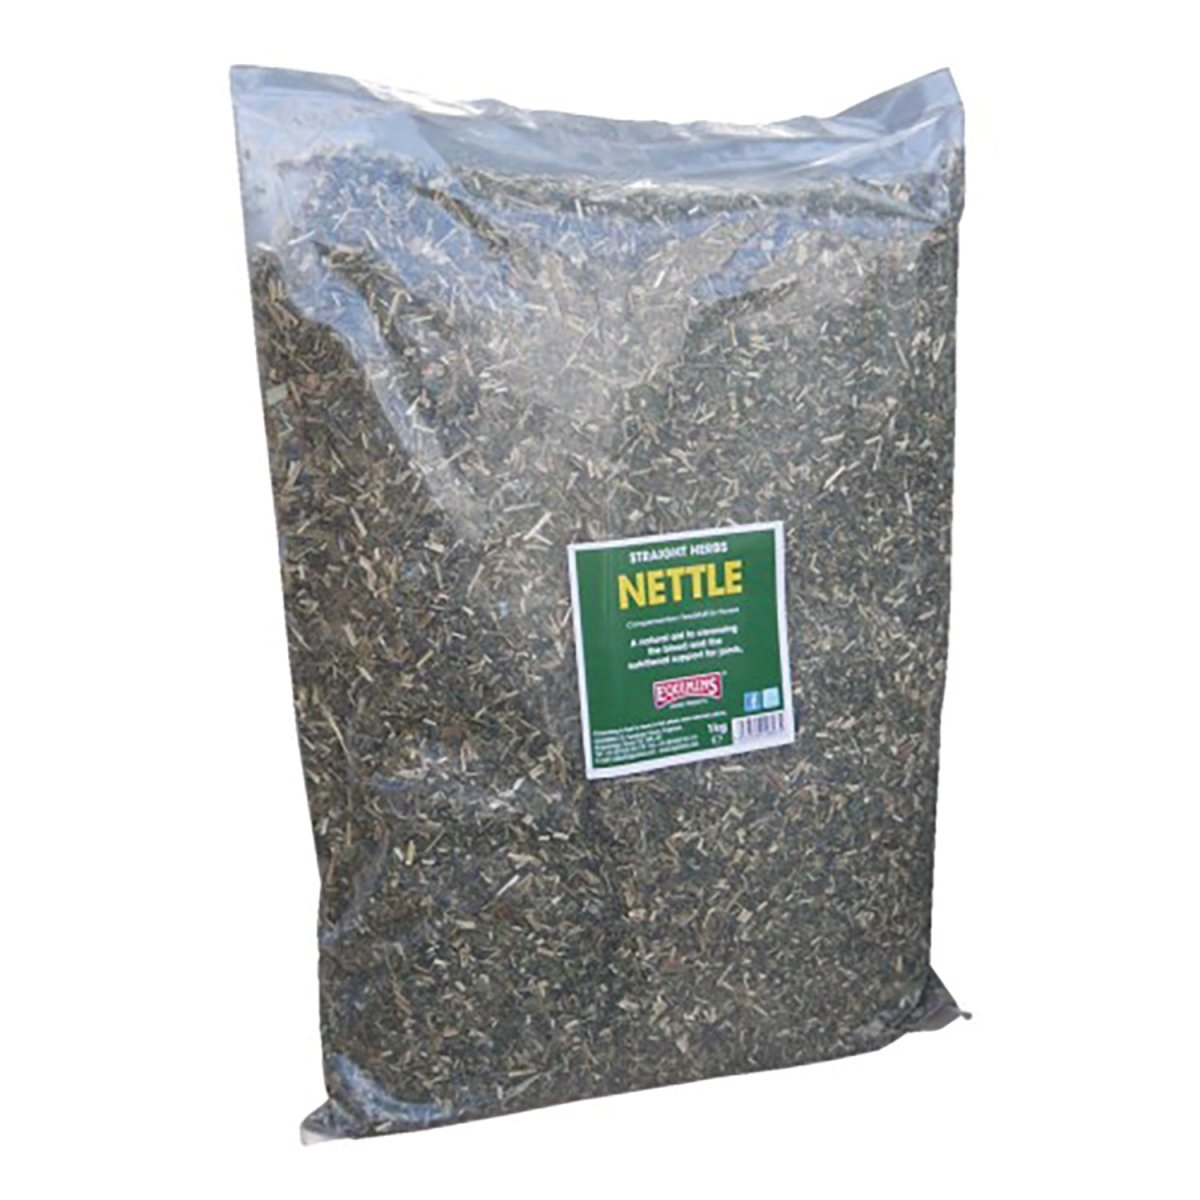 Equimins Straight Herbs Nettle - 1Kg -